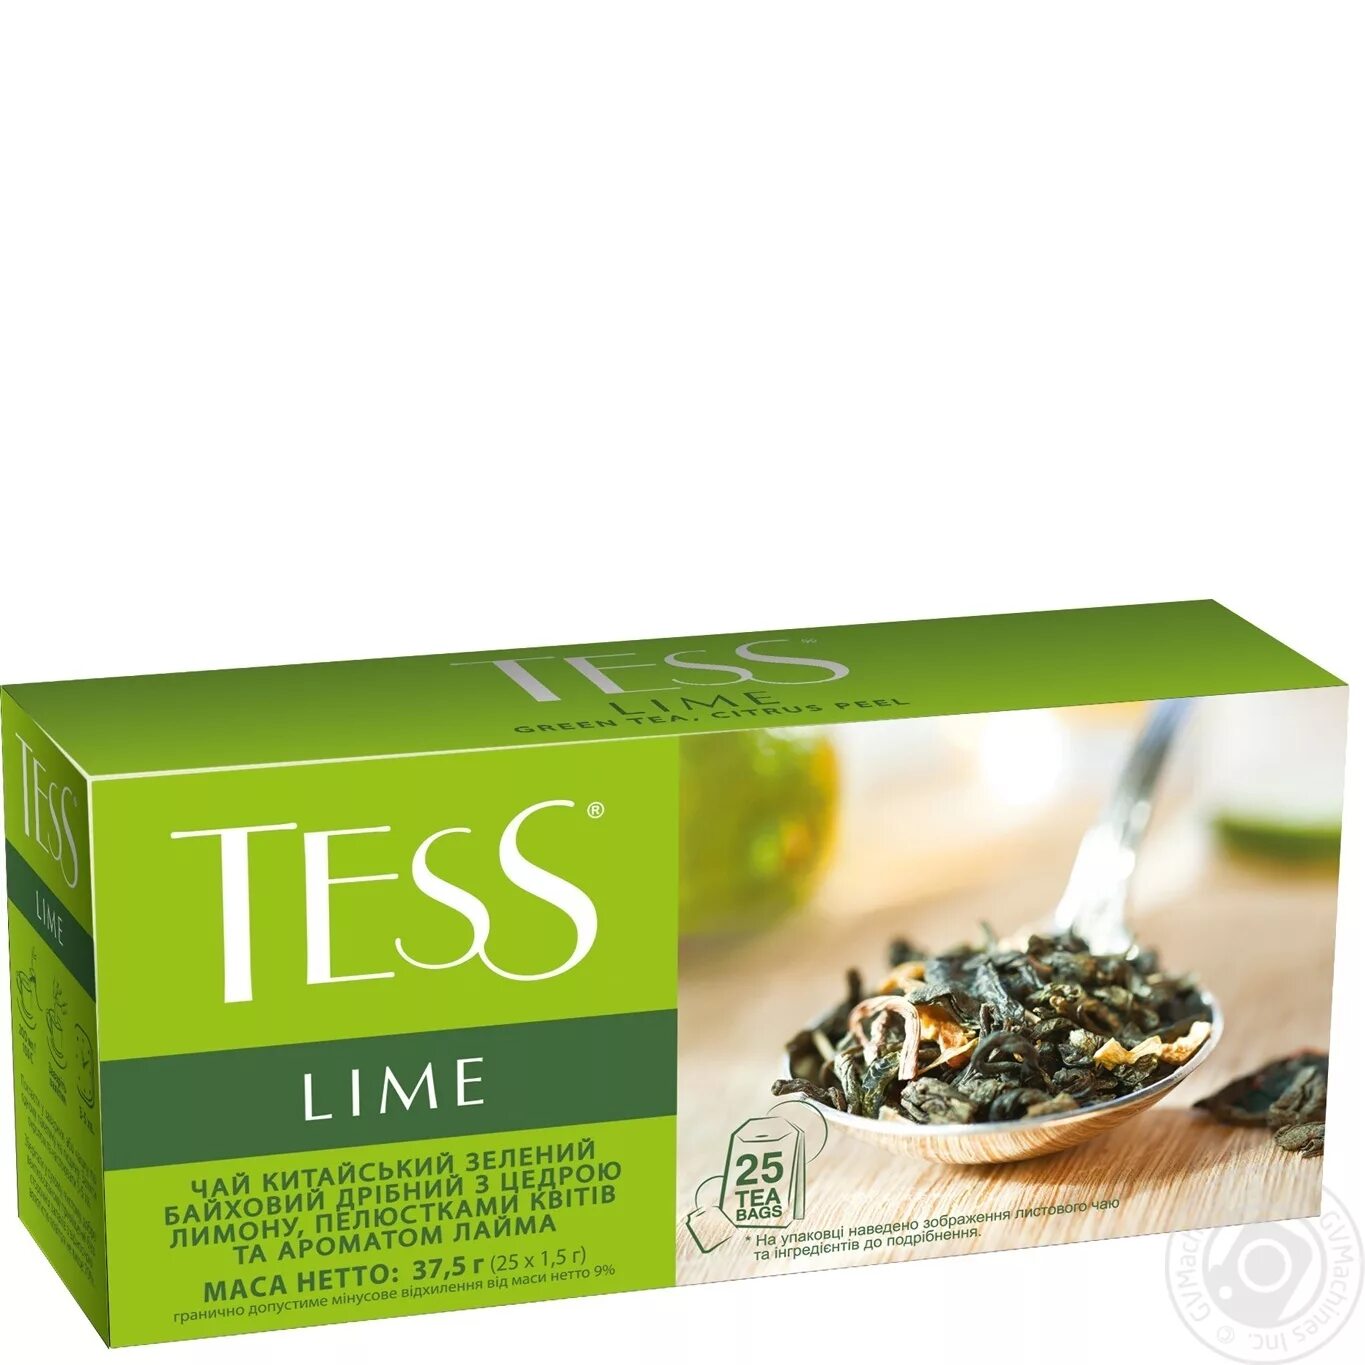 Зеленый чай отзывы врачей. Тесс лайм 25 пак. Чай Тесс лайм 25 пакетиков. Чай зеленый Tess Lime. Чай зеленый Tess Lime 25 пакетиков.